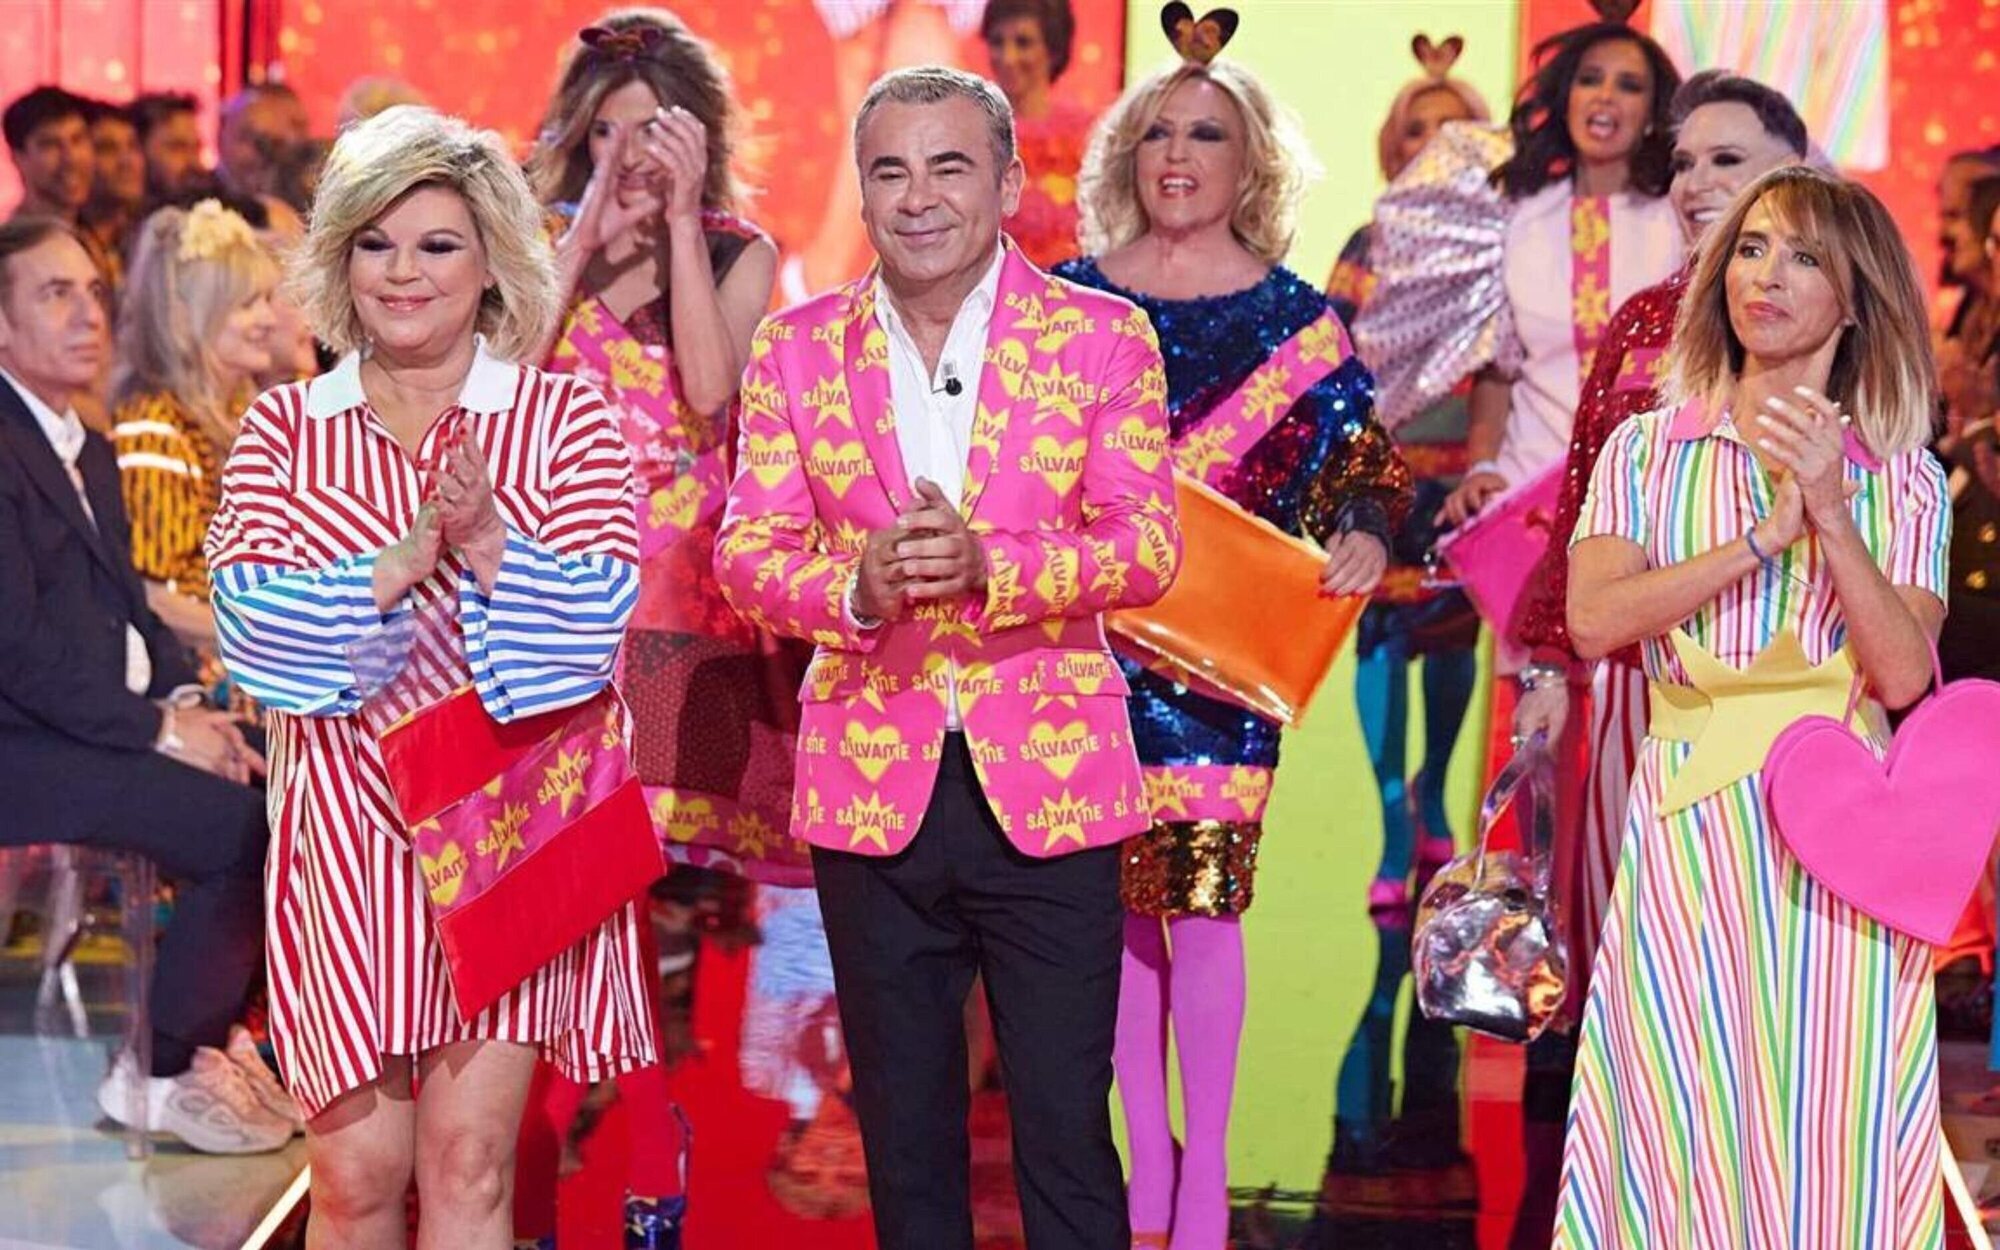 La audiencia cancela Telecinco por deshacerse de 'Sálvame': "No es telebasura, sino un show"